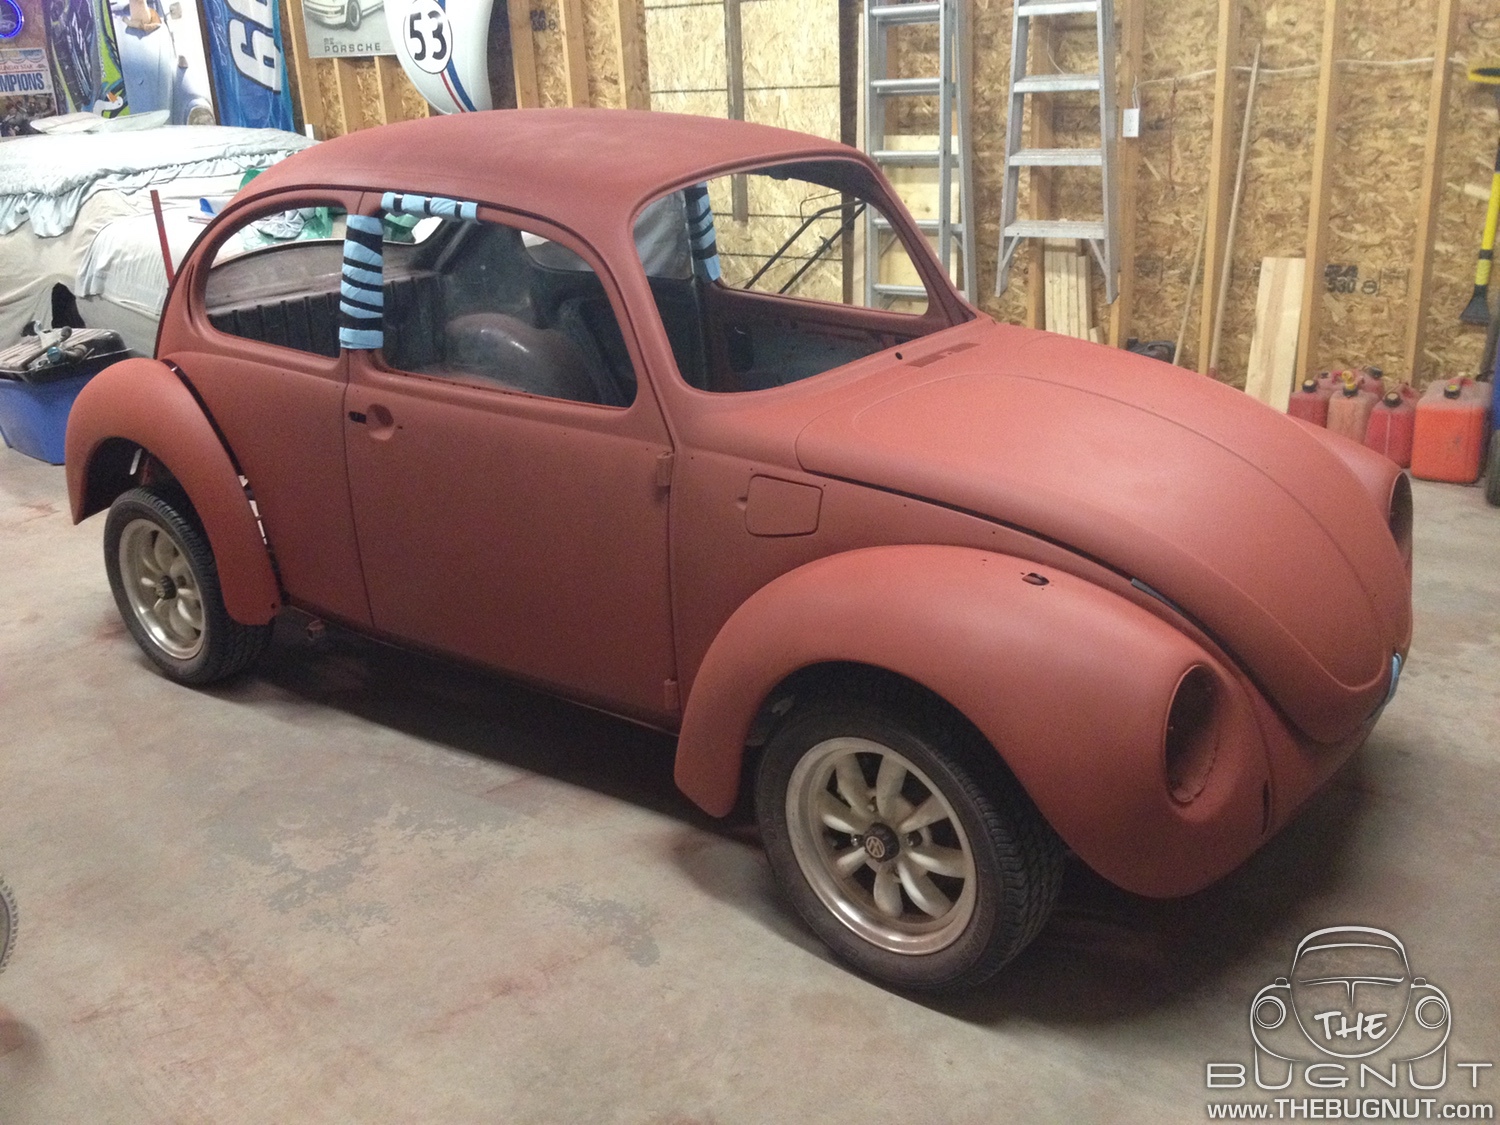 1973 VW Super Beetle Restoration